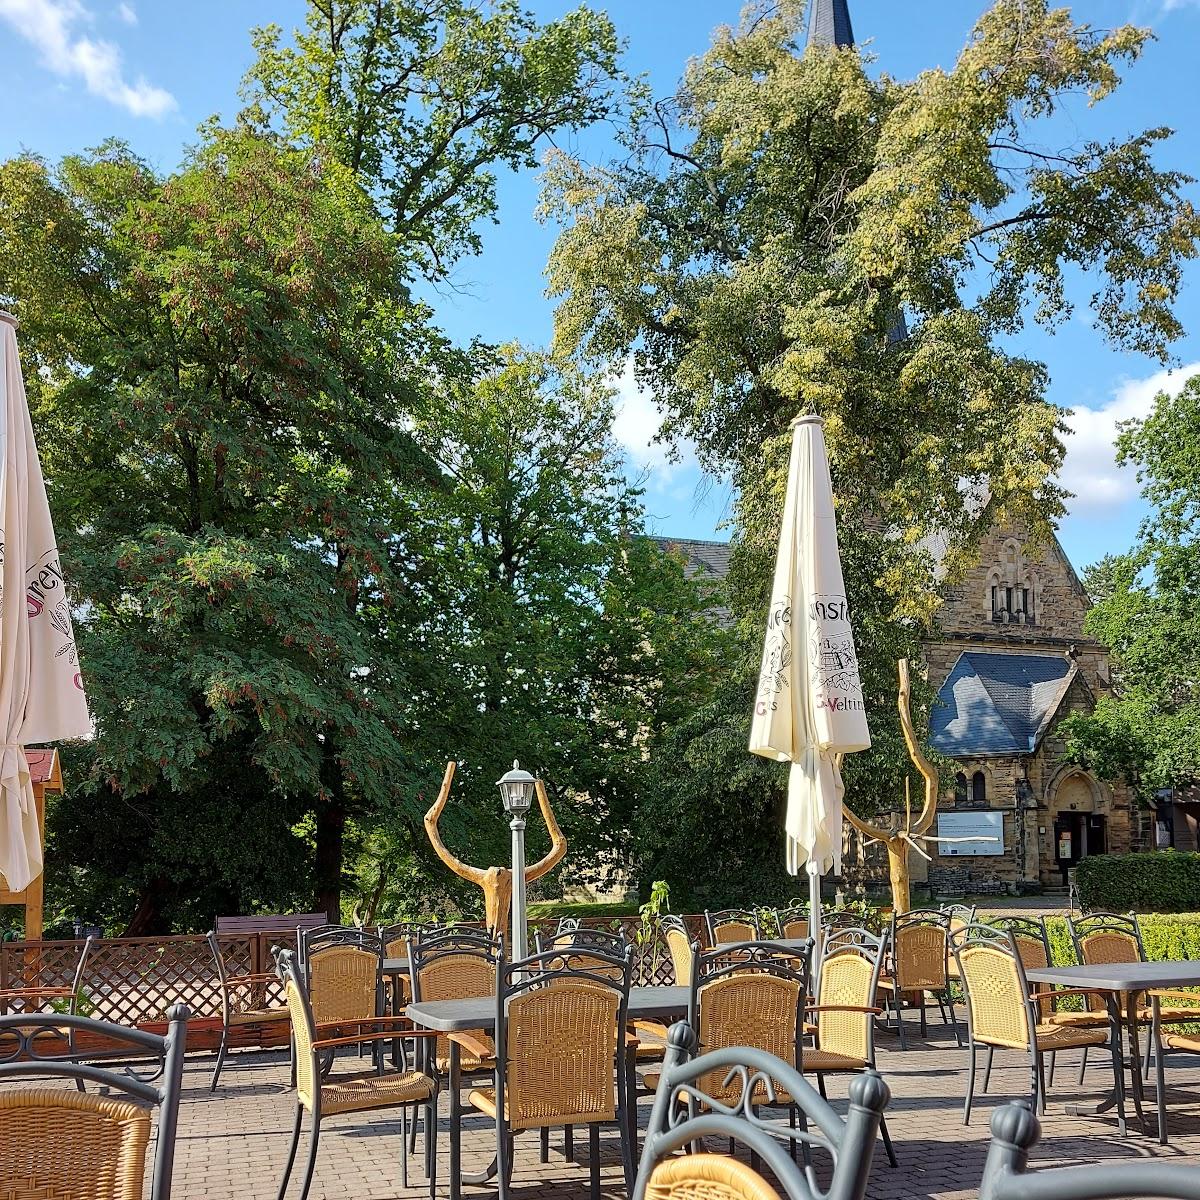 Restaurant "Gasthaus Zum Wasserriesen" in Thale